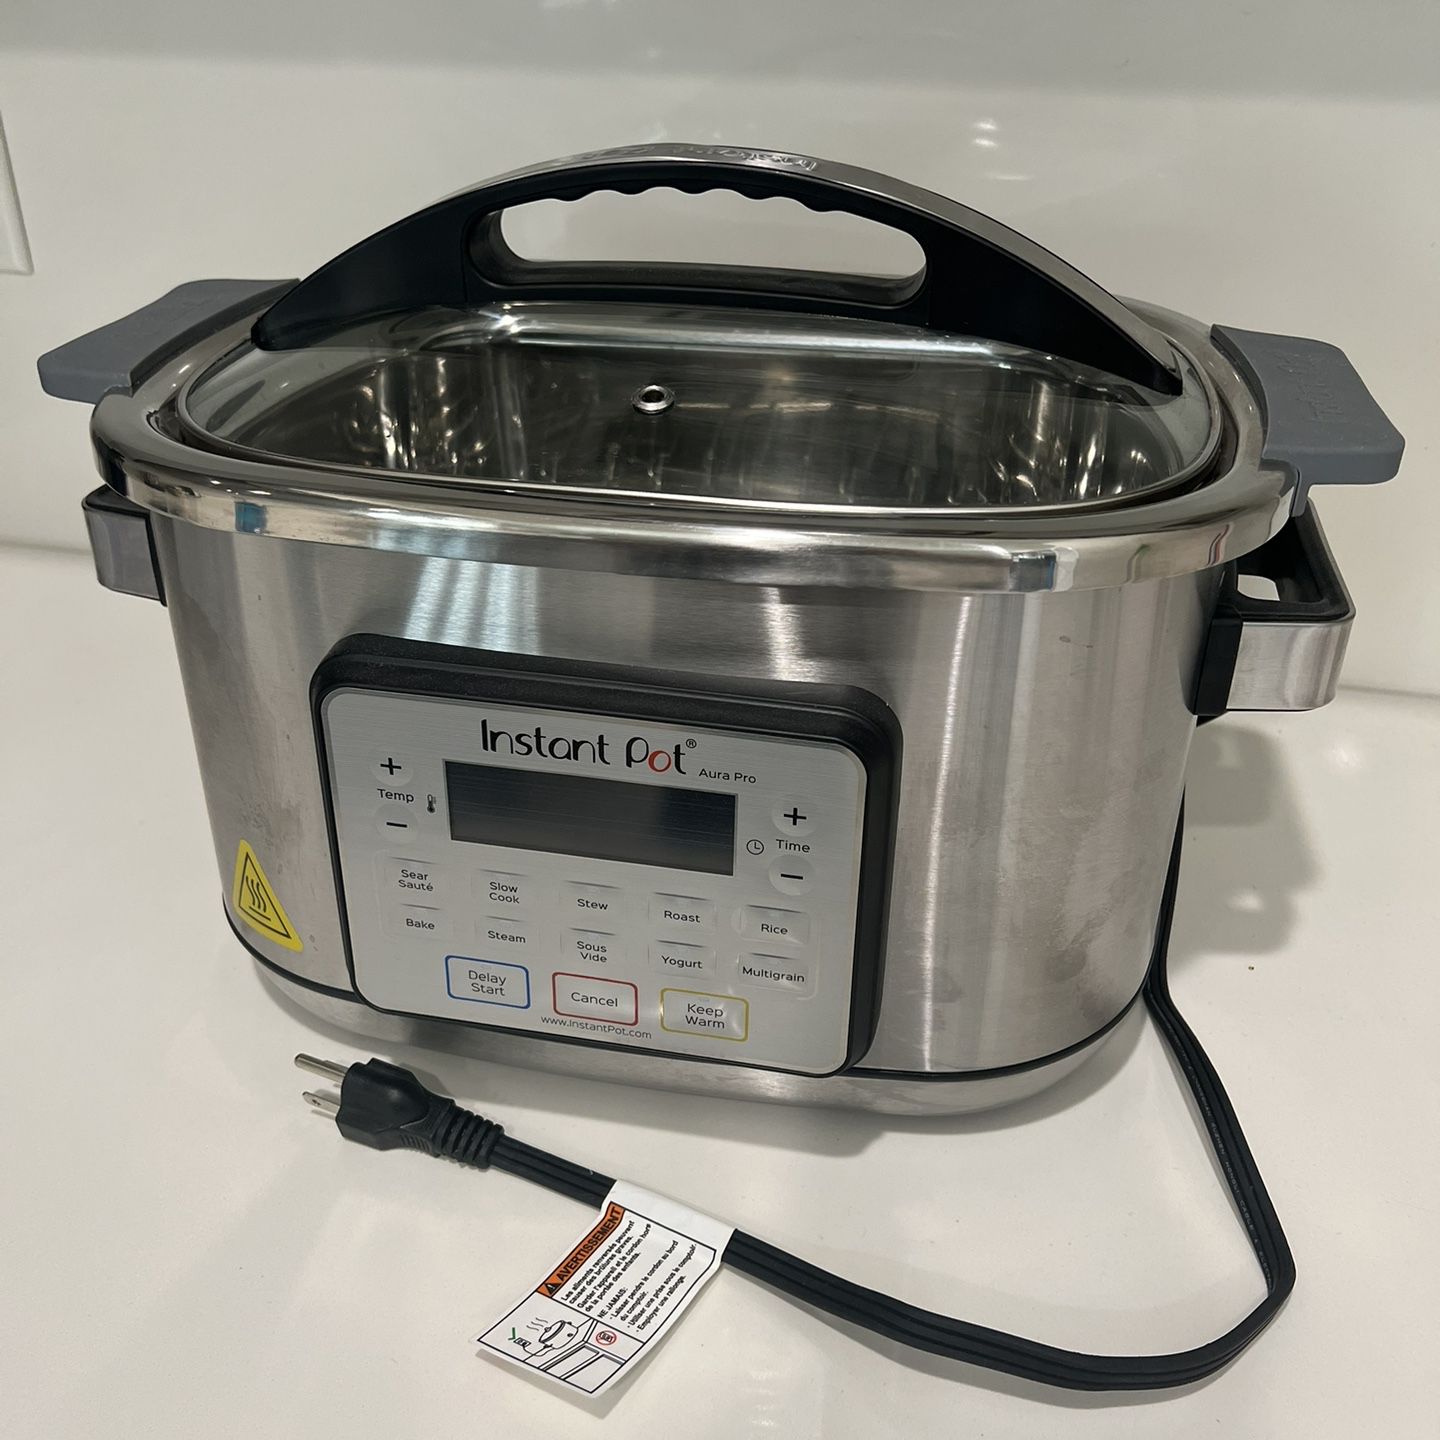 Instant Pot Aura Pro 8-qt. Multicooker